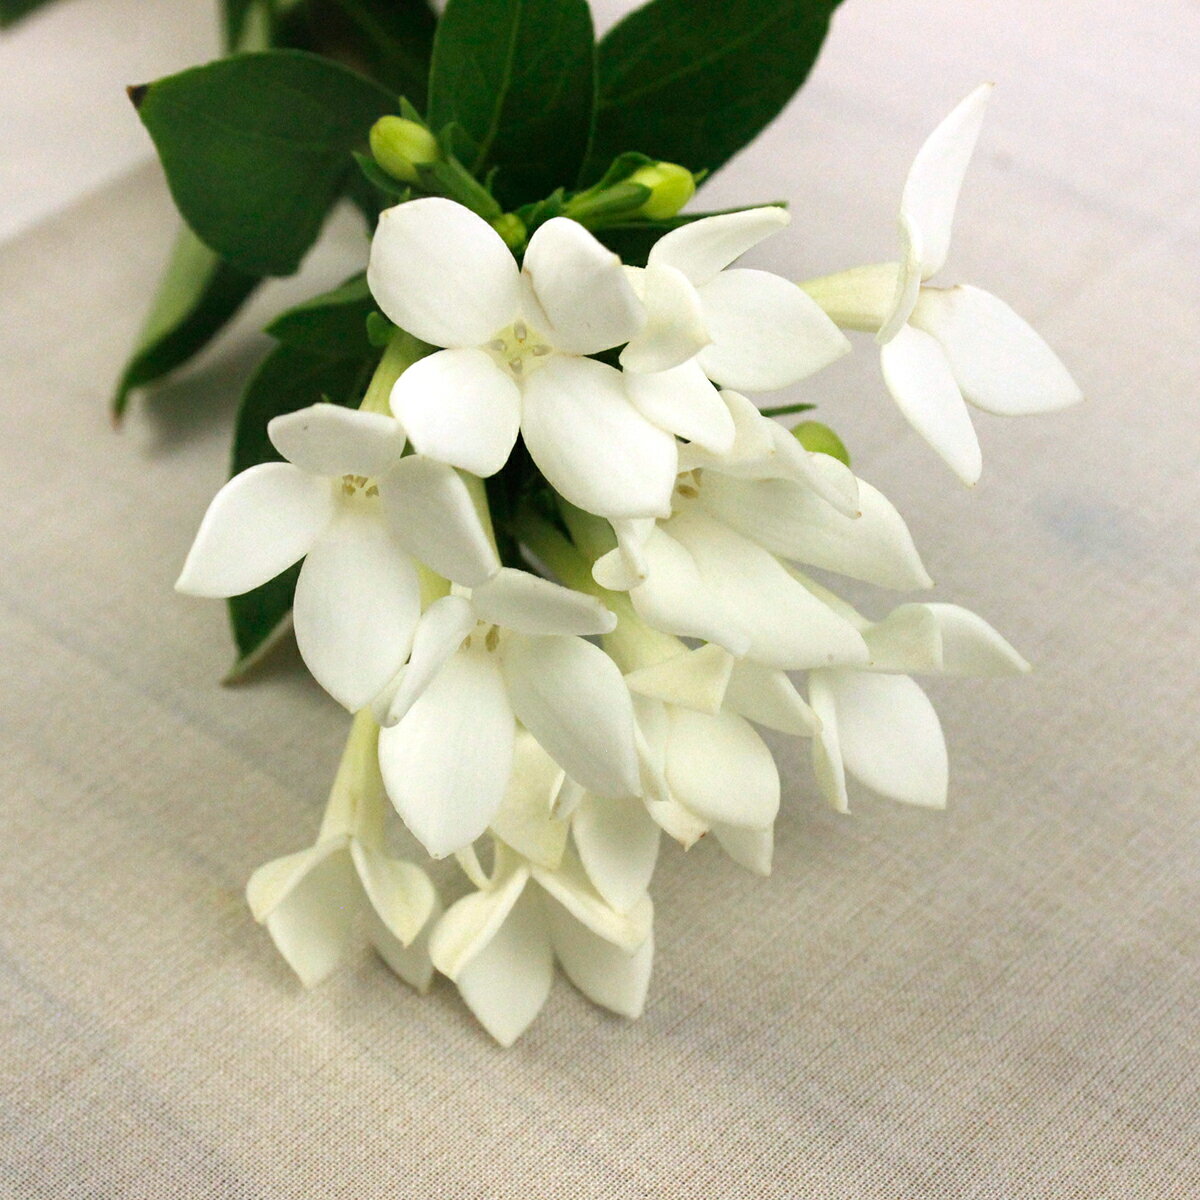 【生花】ブバリア ホワイトシュープリーム(白)...の紹介画像2